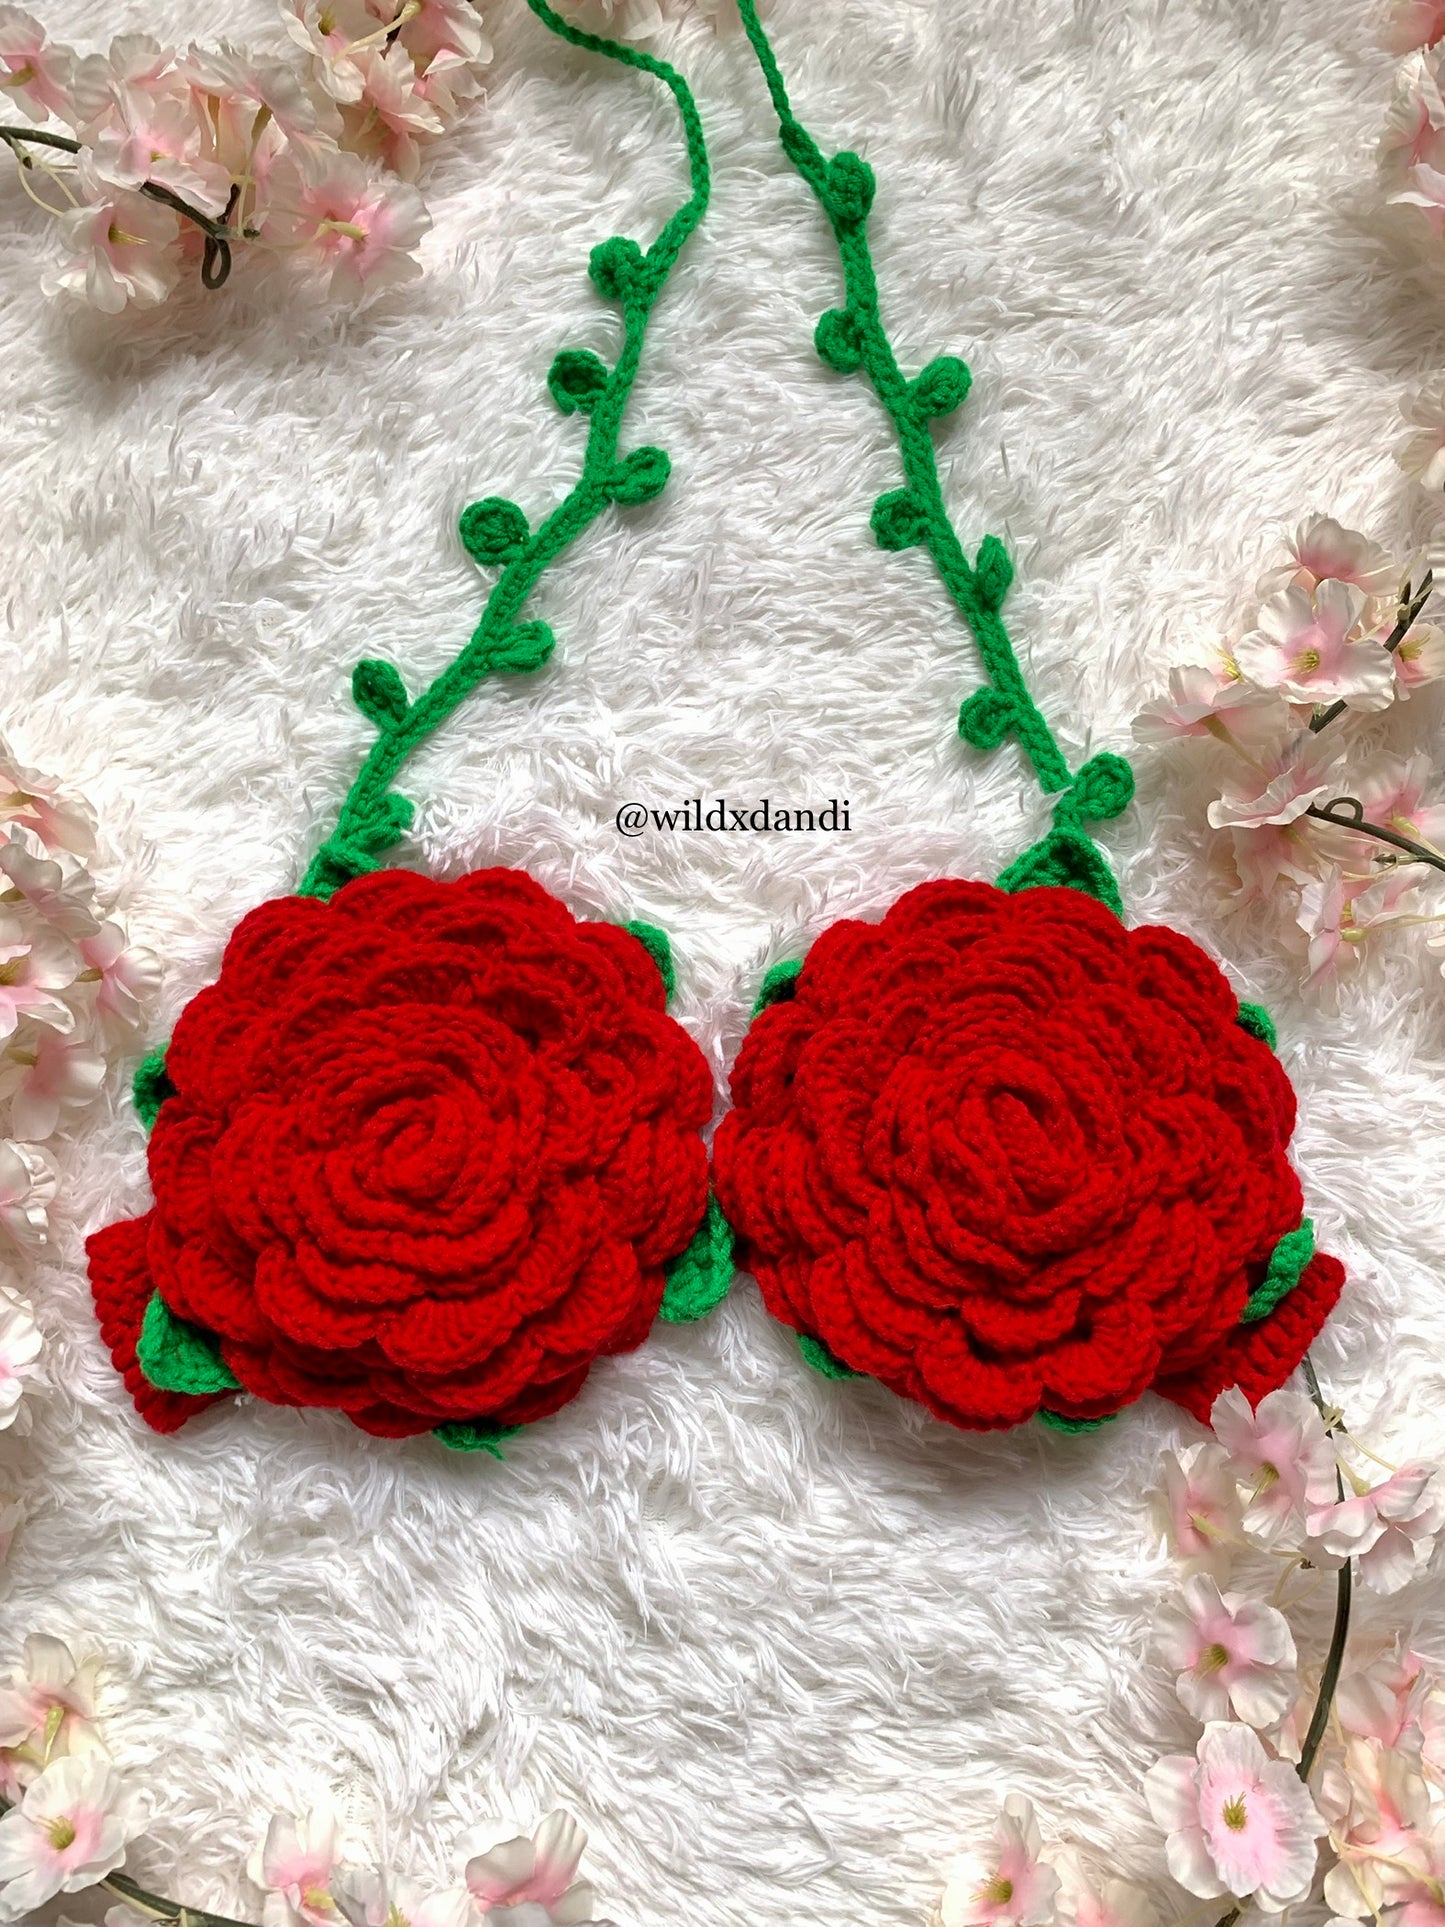 Rose Crochet Bralette